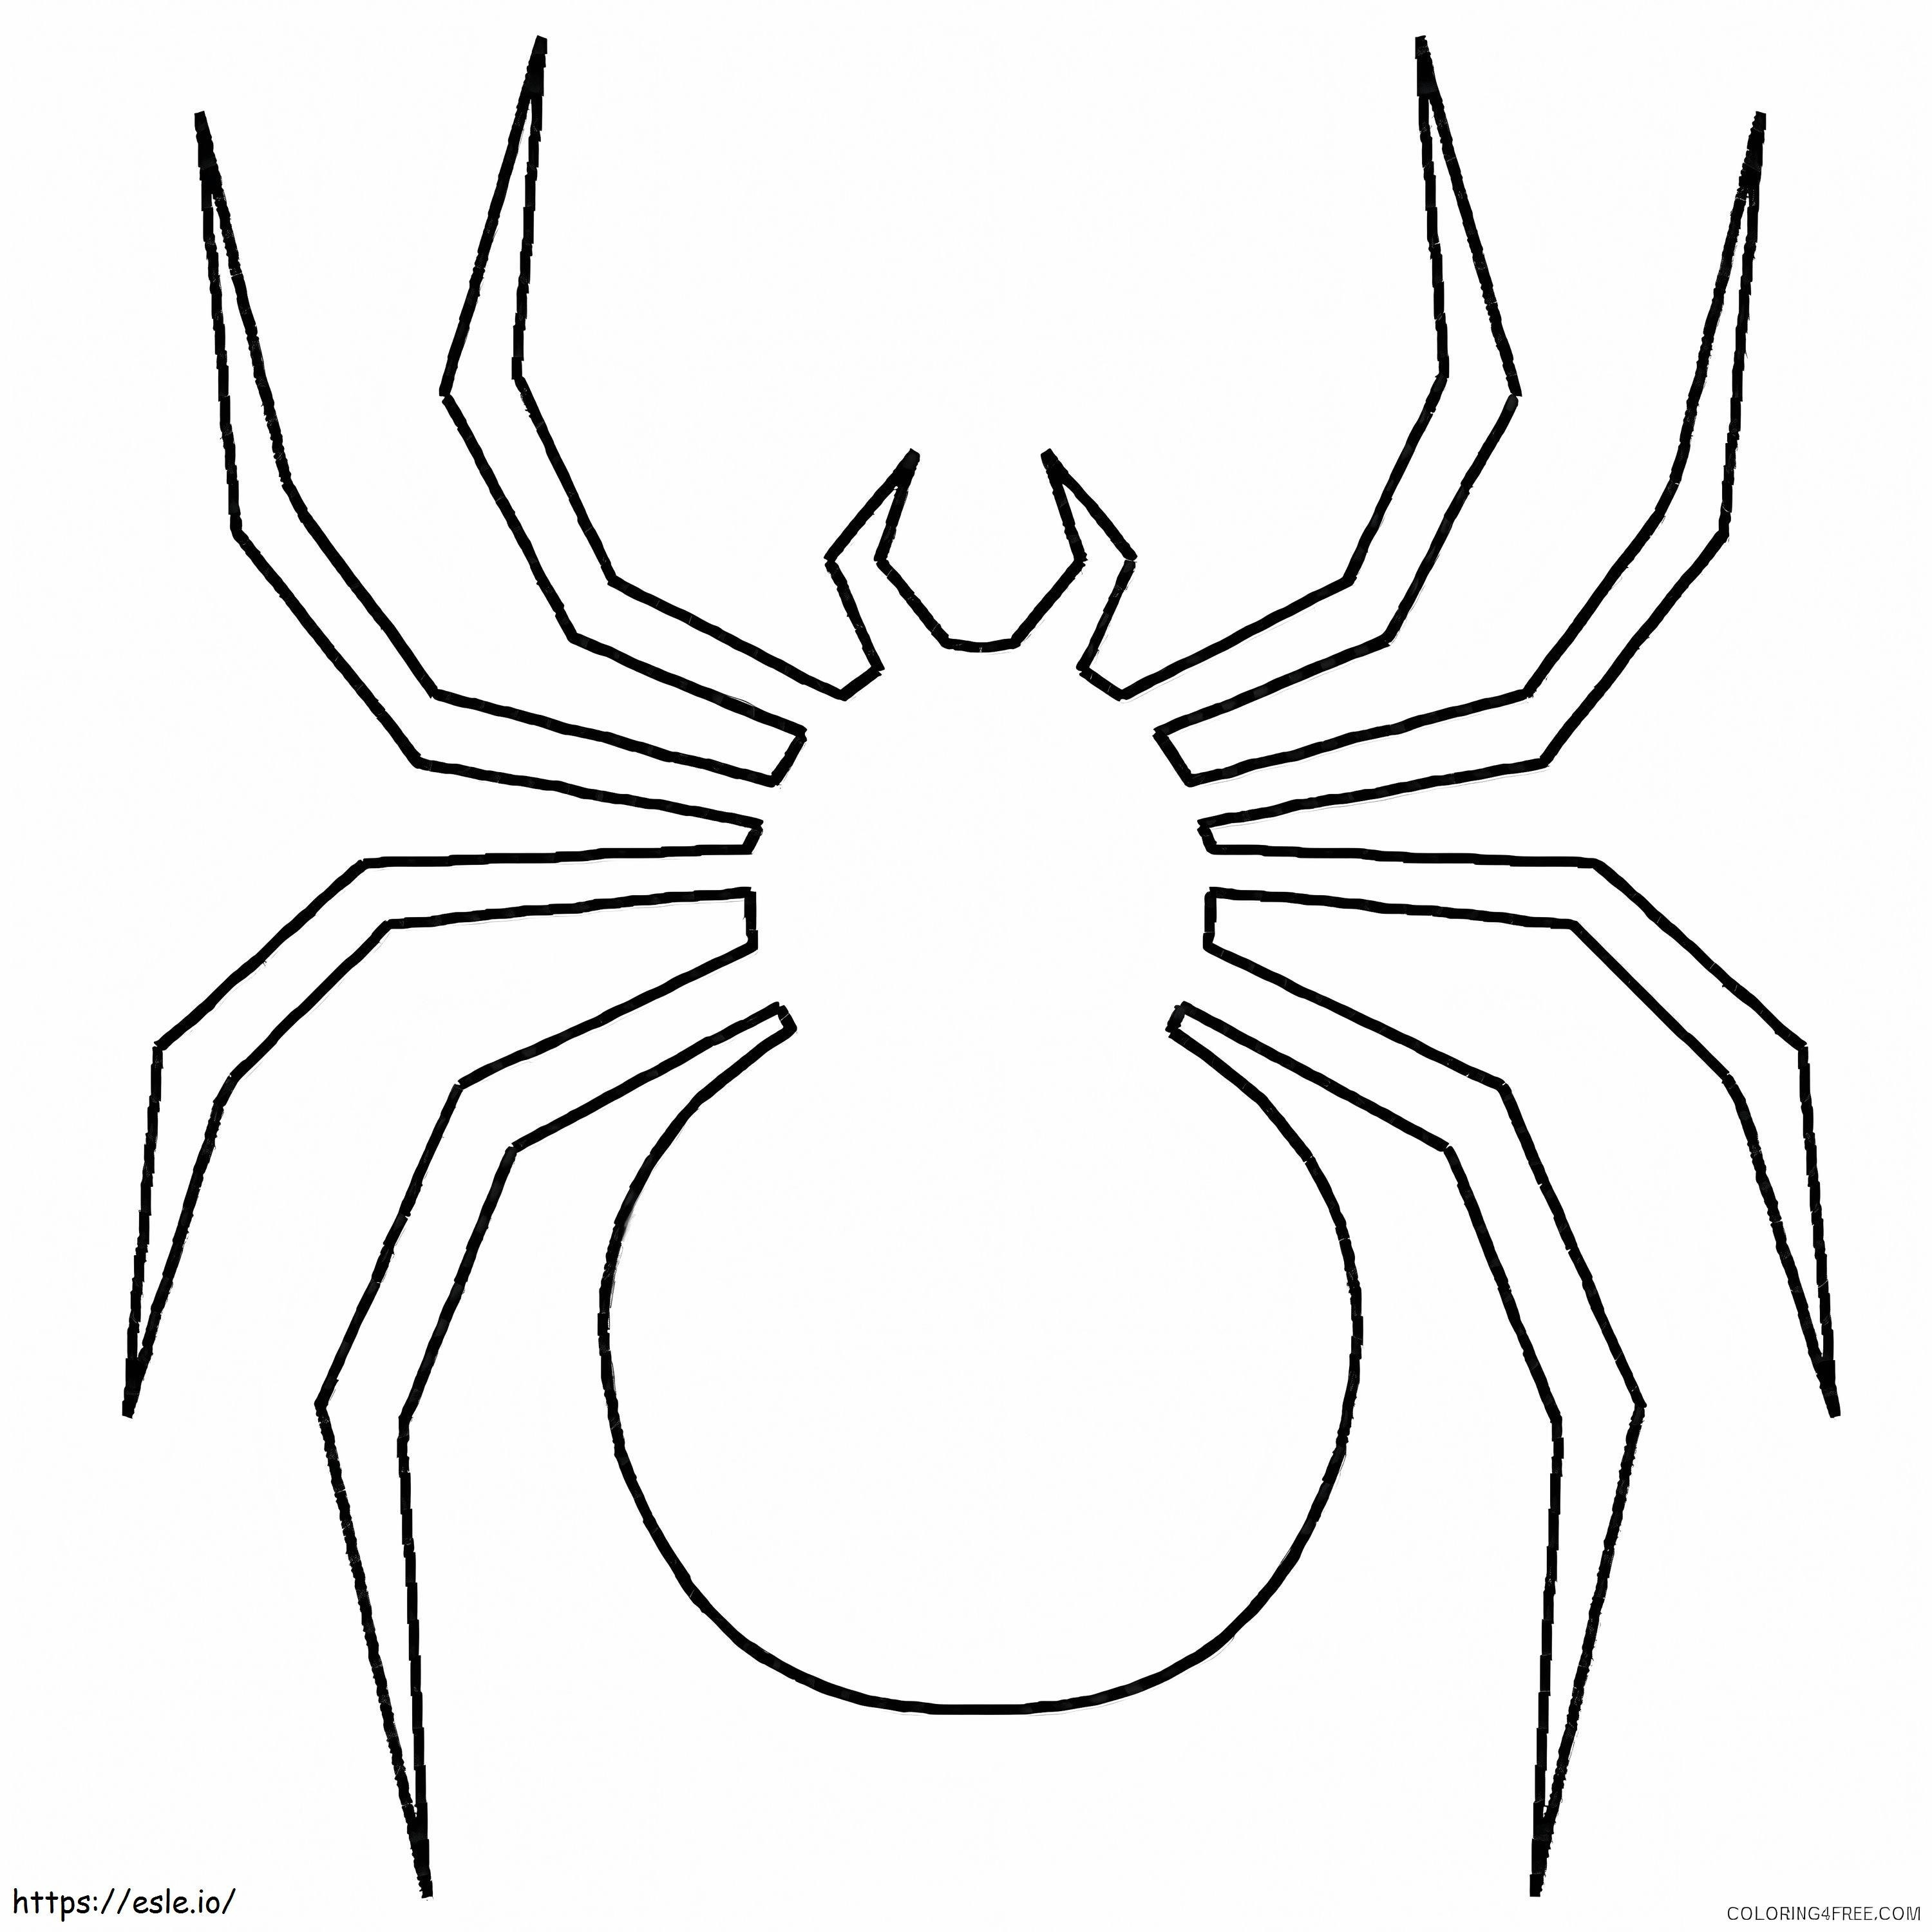 örümcek logosu boyama